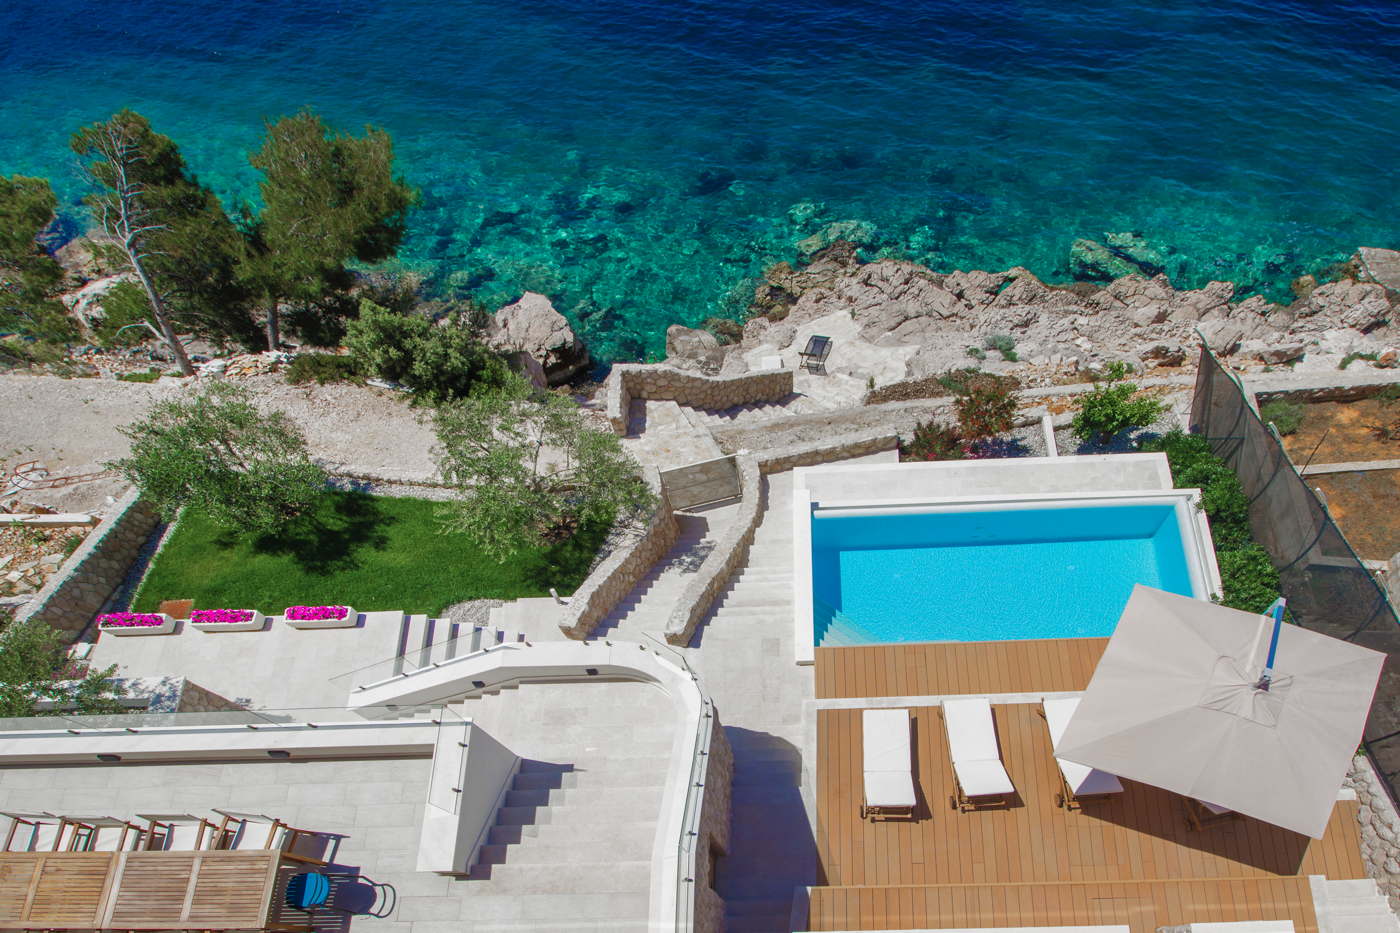 Luxusvilla am Meer mit PoolLuxusferienhaus in Kroatien mieten